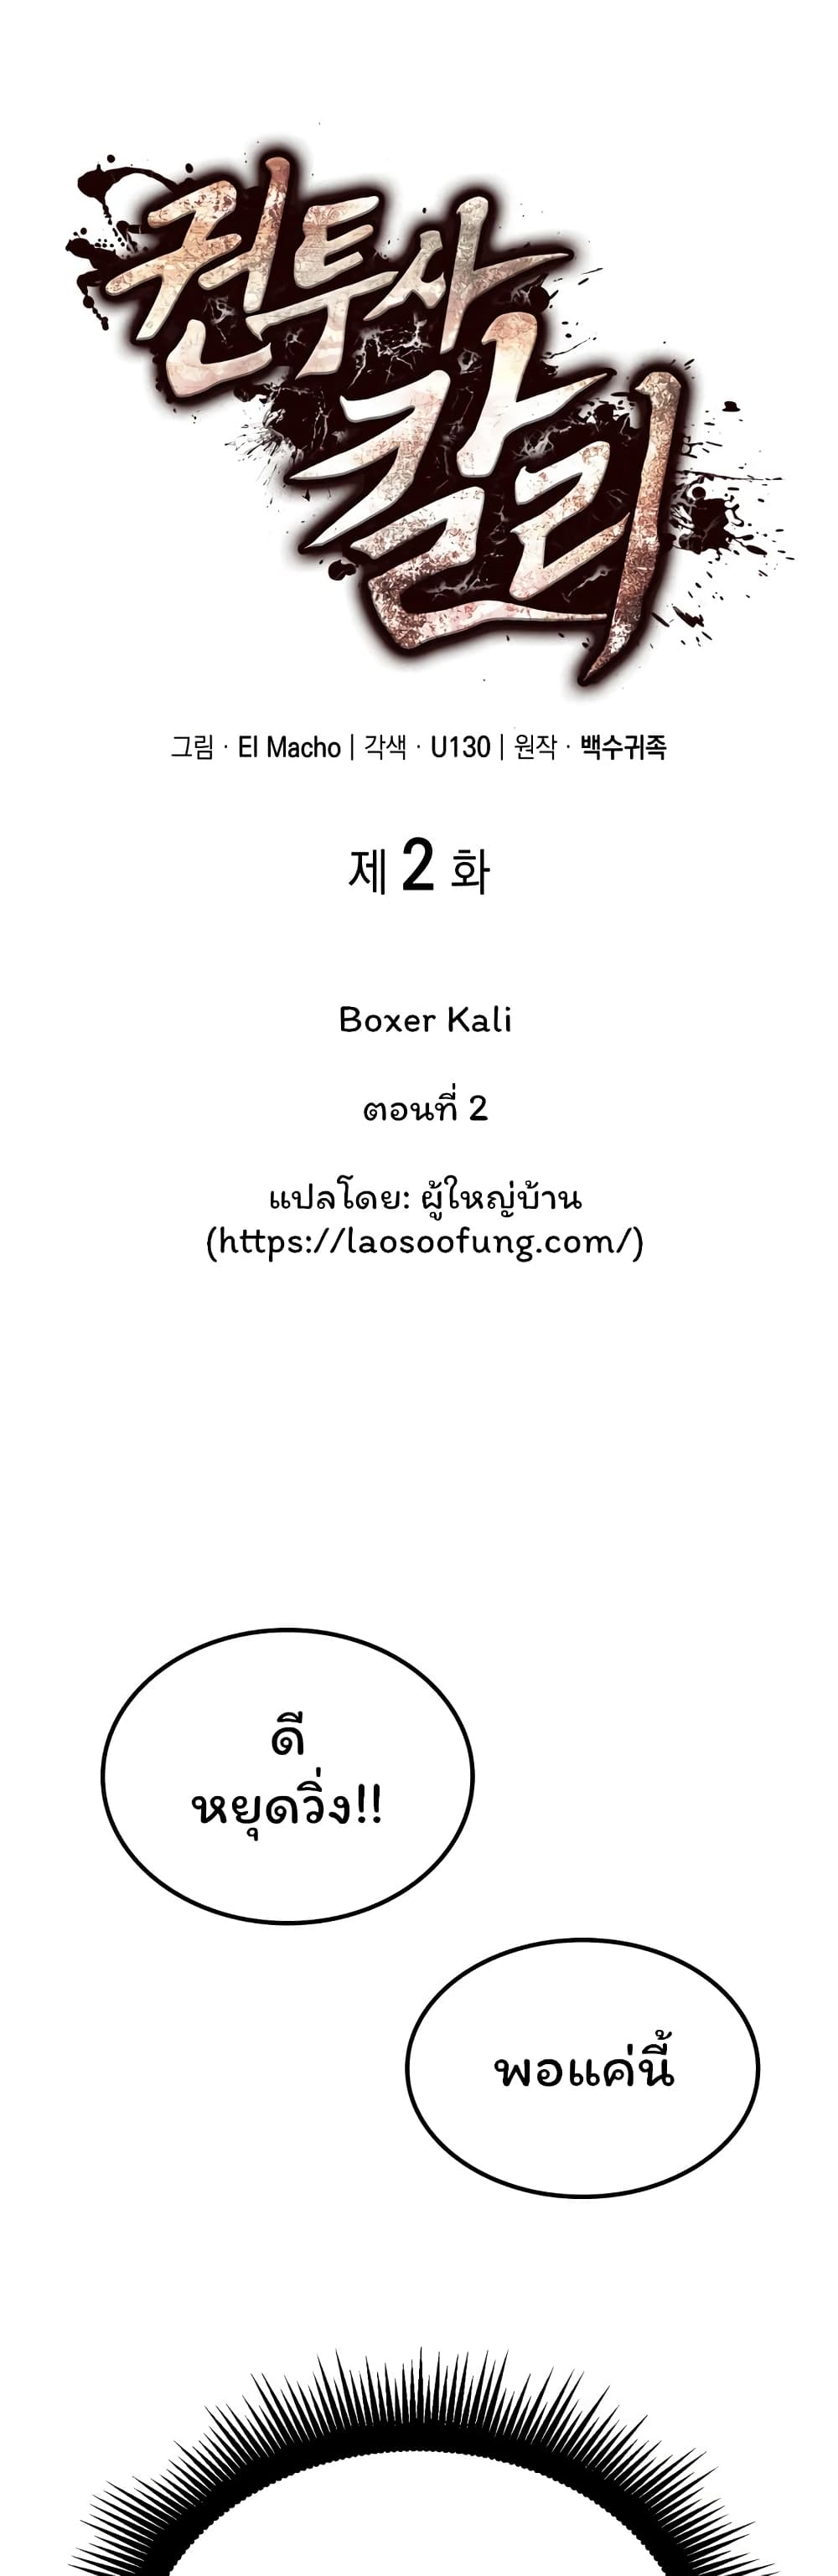 Boxer Kali 2-2